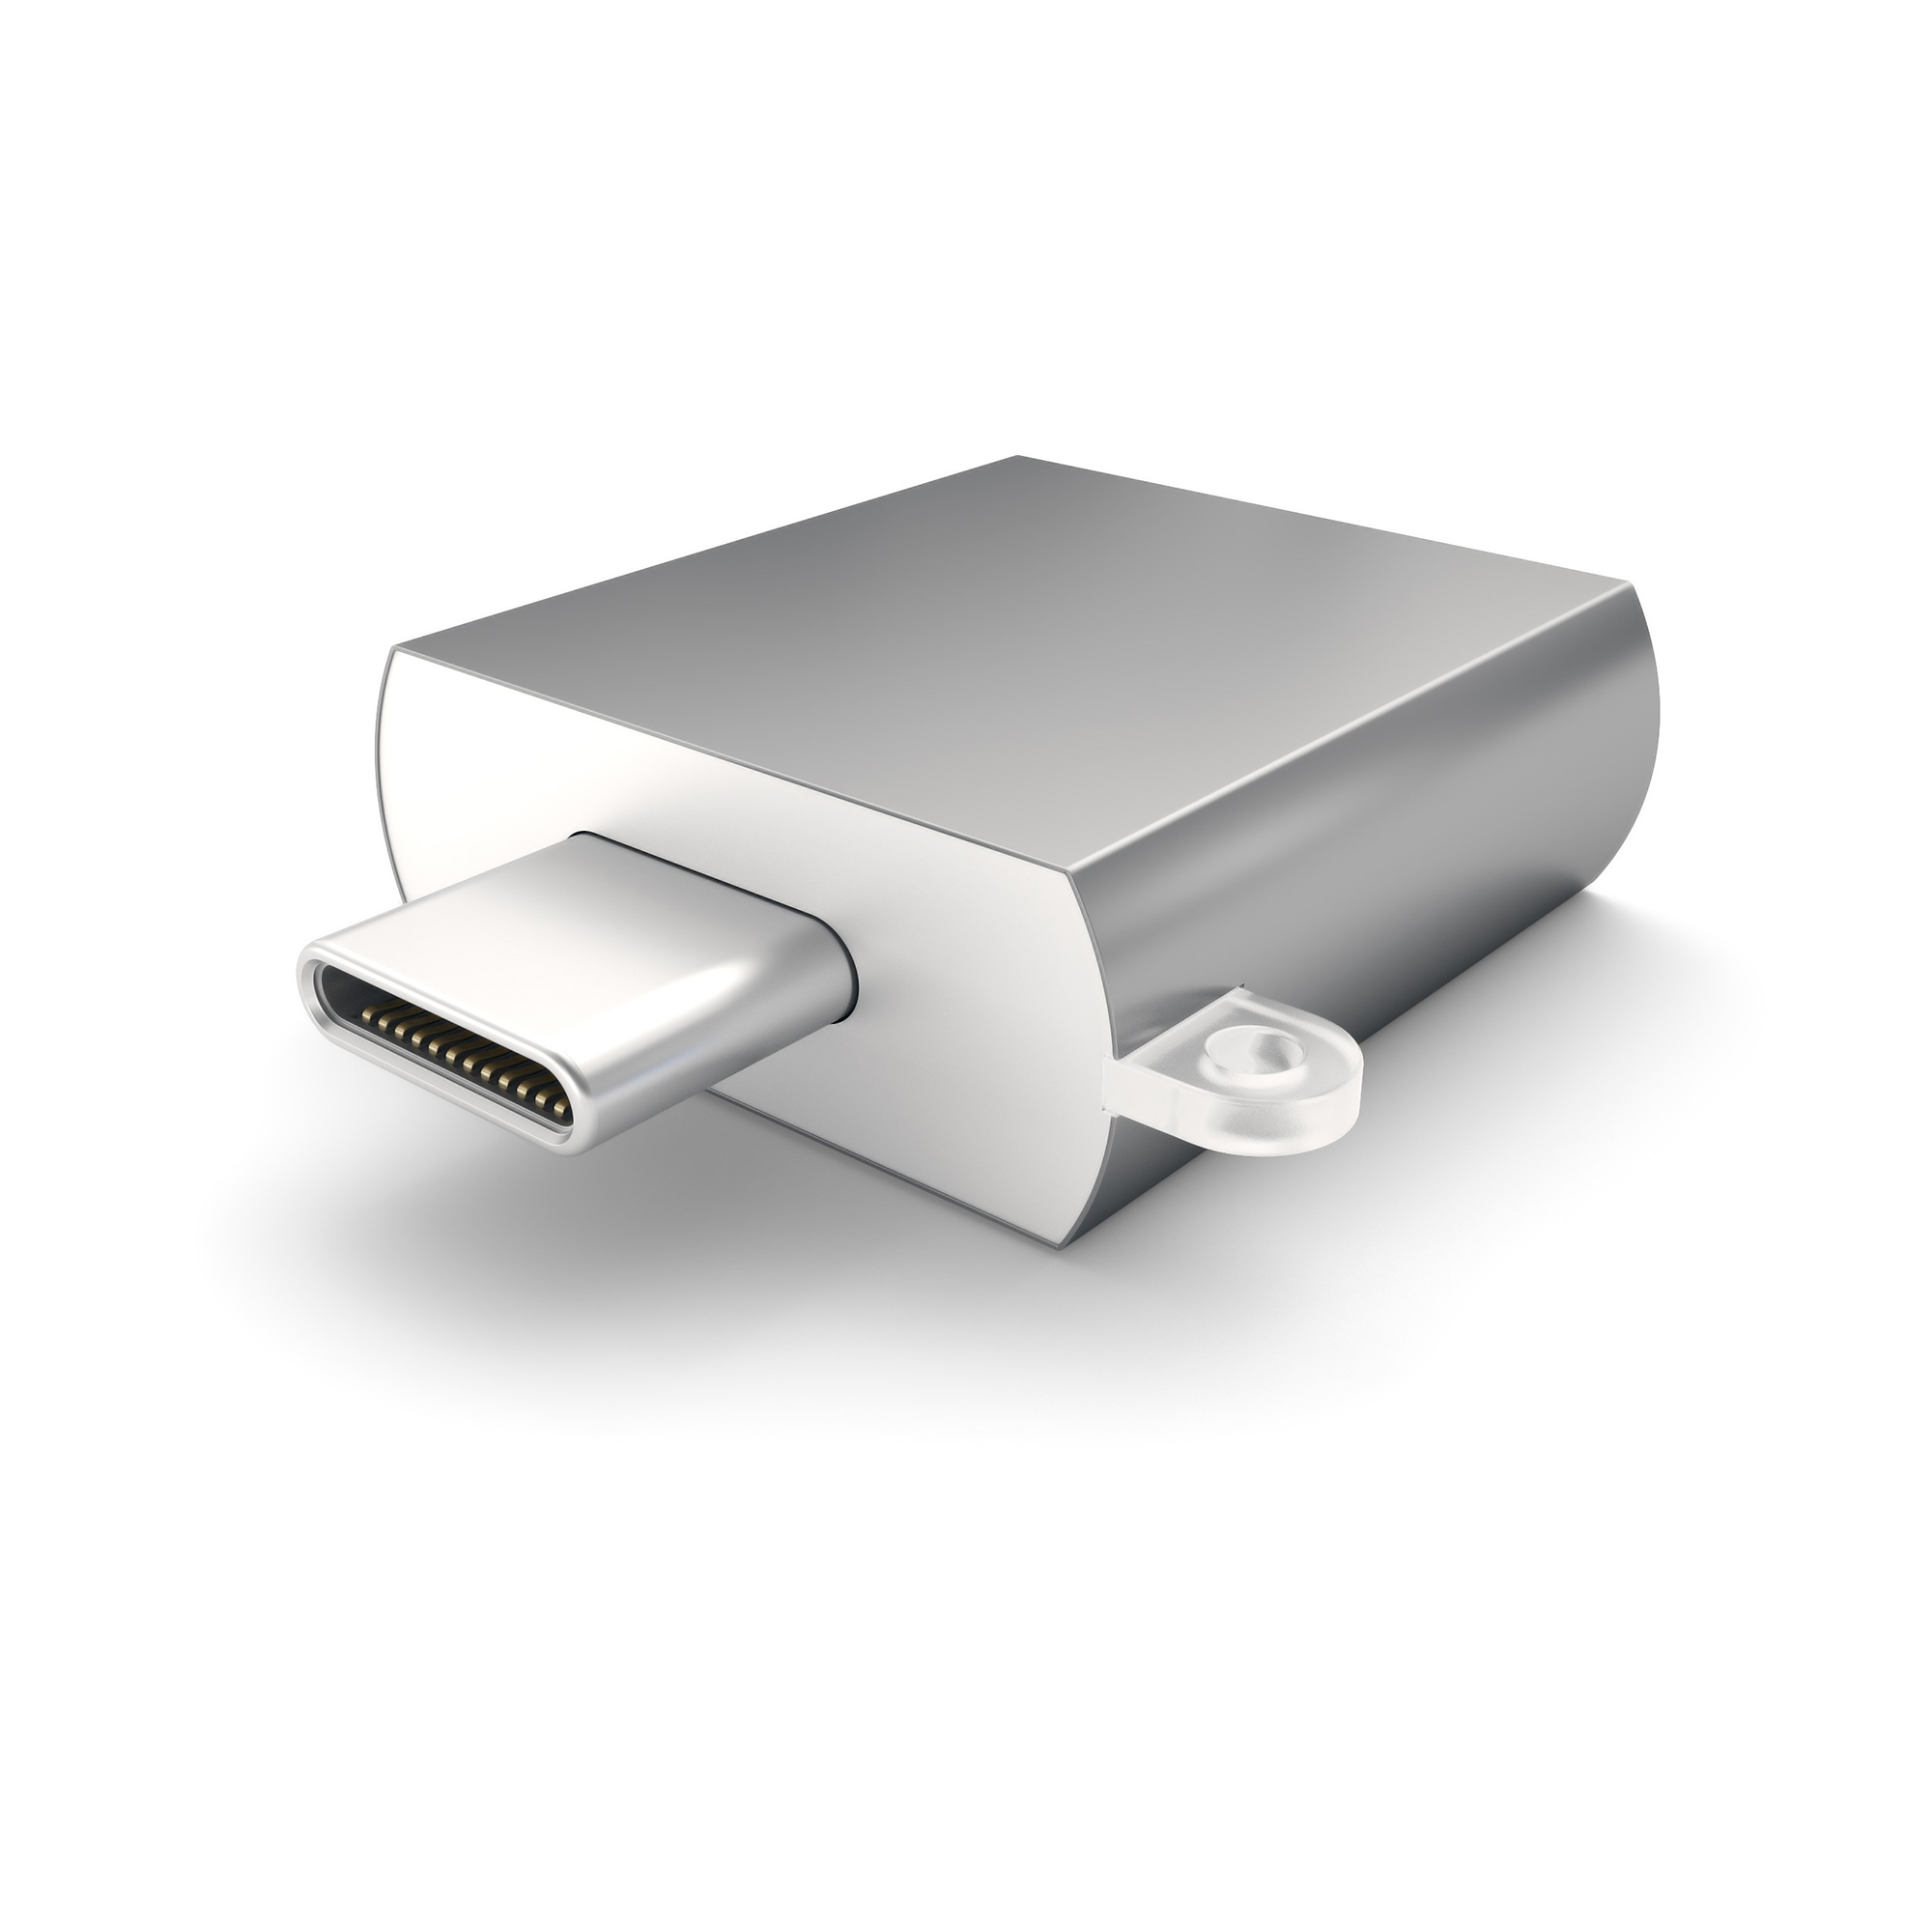 Адаптер Satechi USB 3.0 Type-C to USB 3.0 Type-A Space Gray ST-TCUAM переходник satechi usb type a to type c серебристый